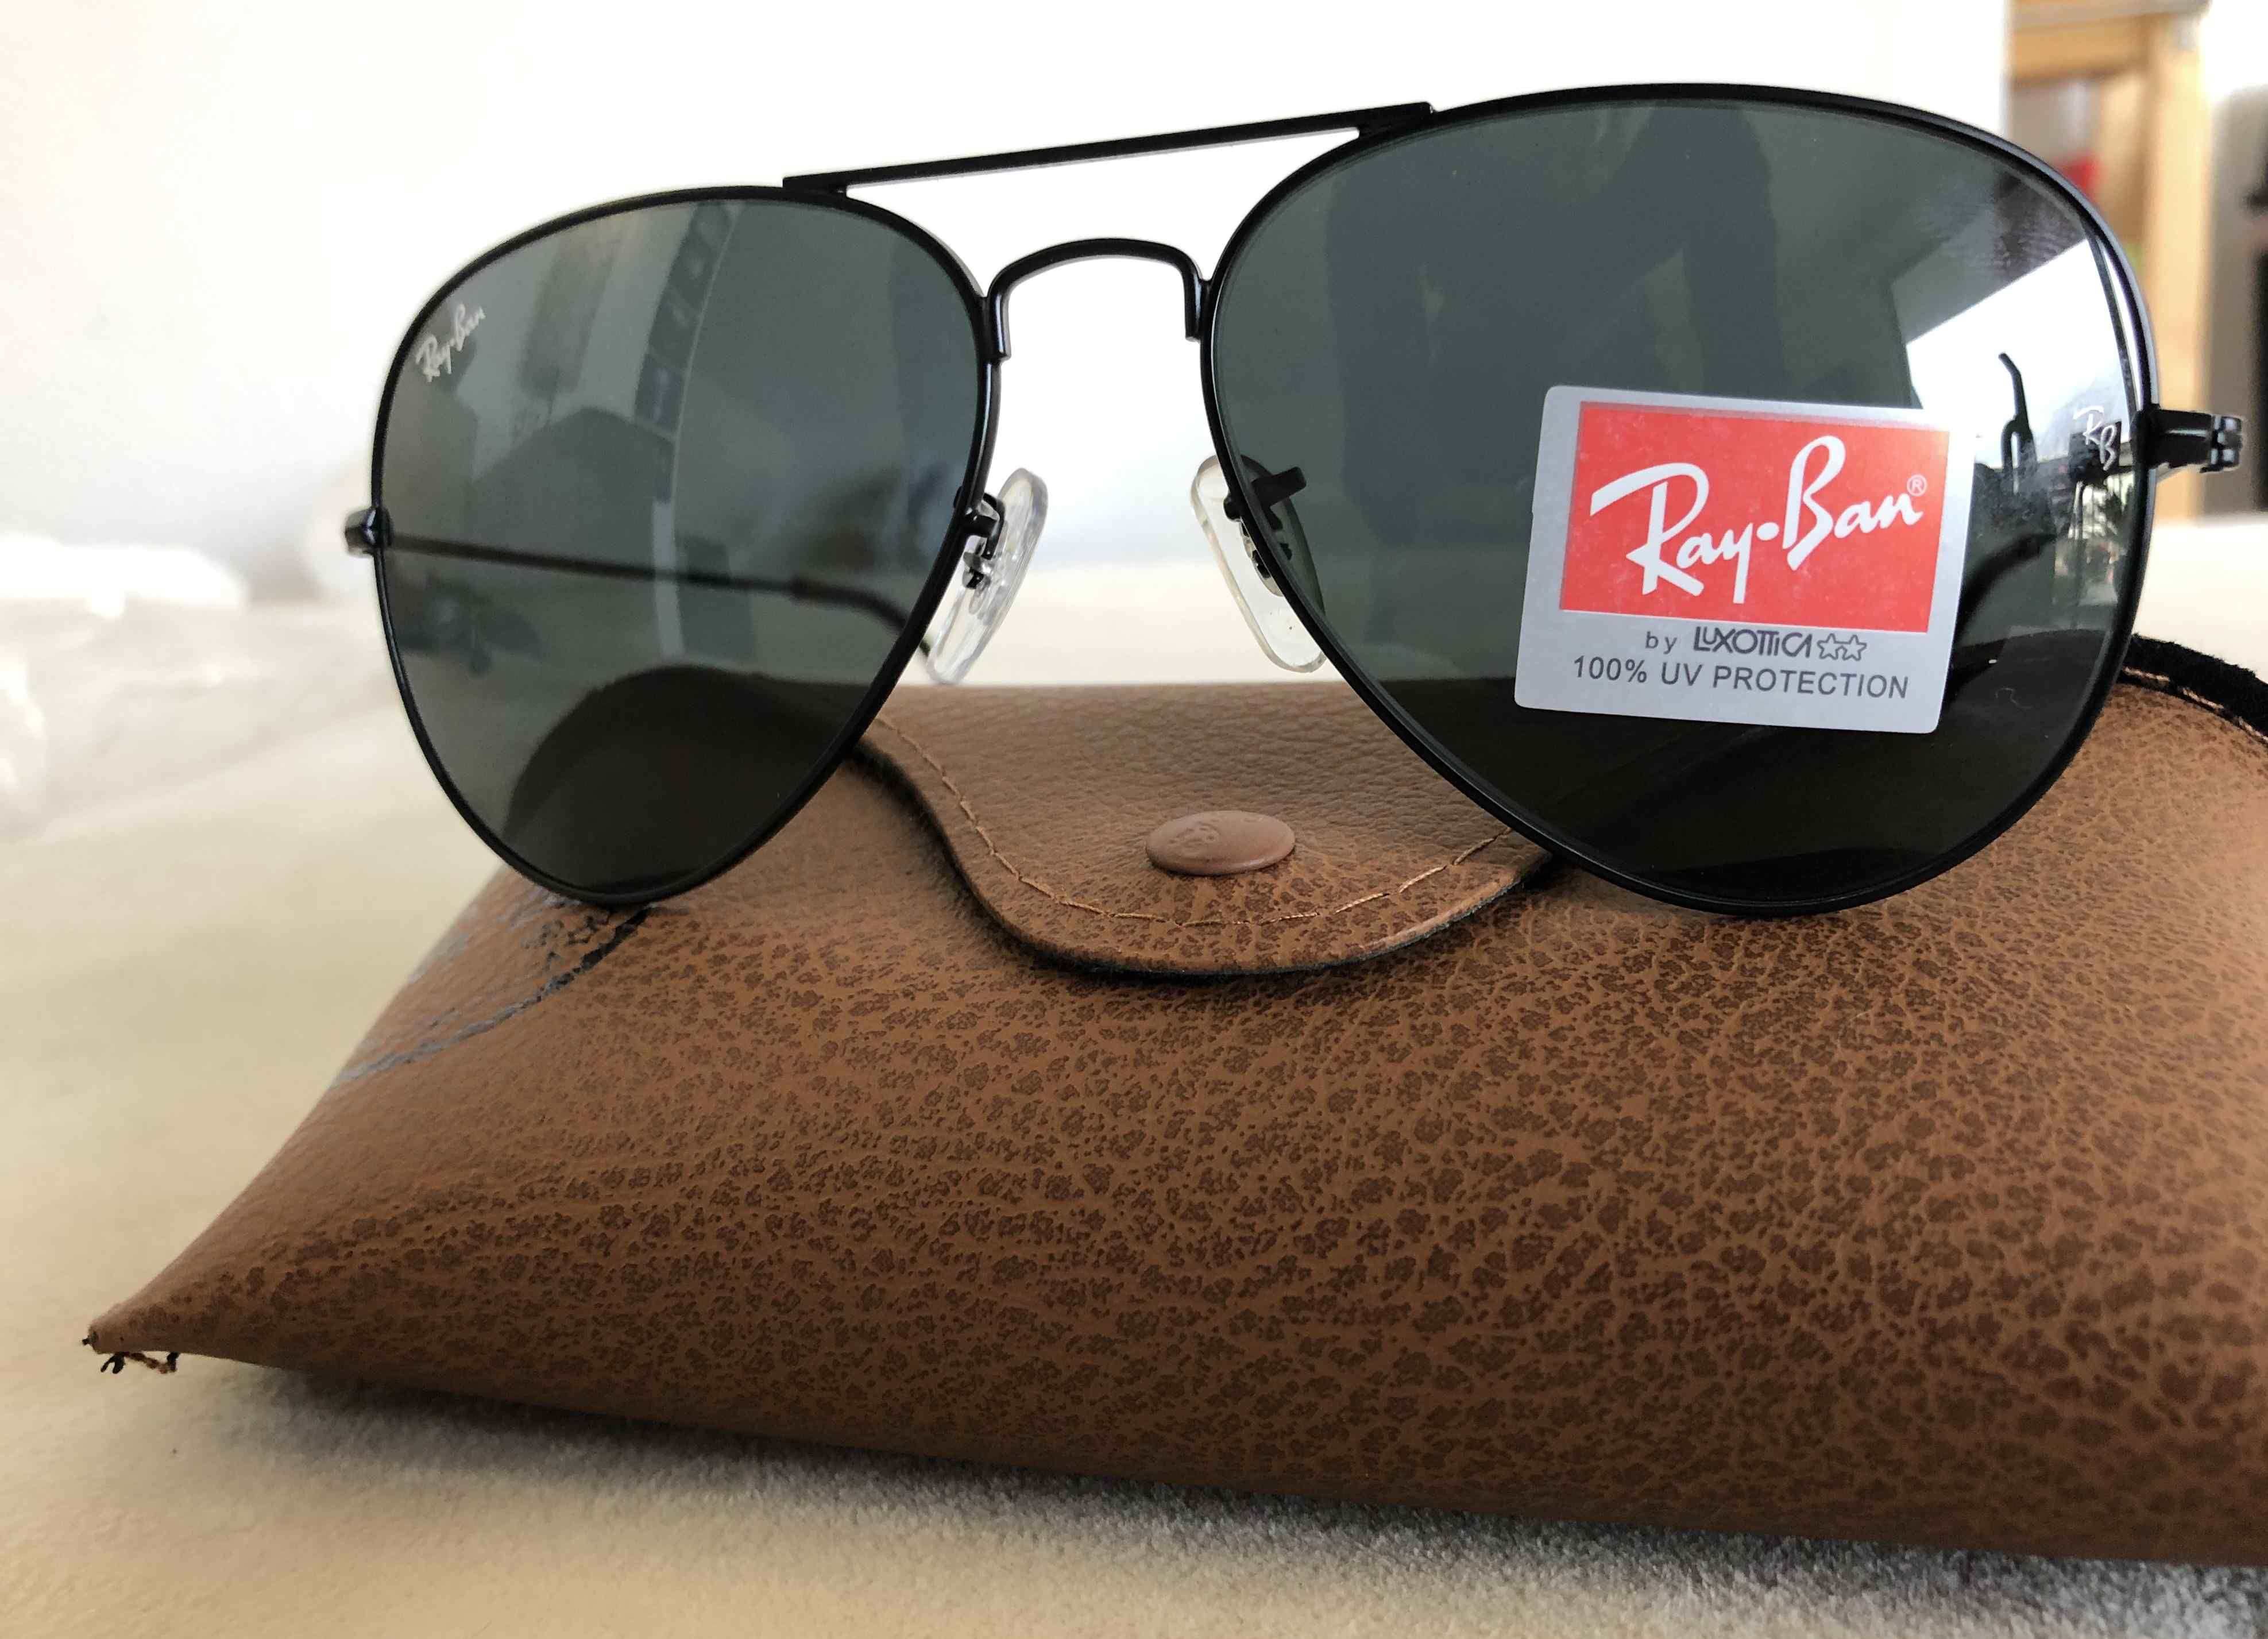 Brand New Authentic RayBan Aviator Sunglasses